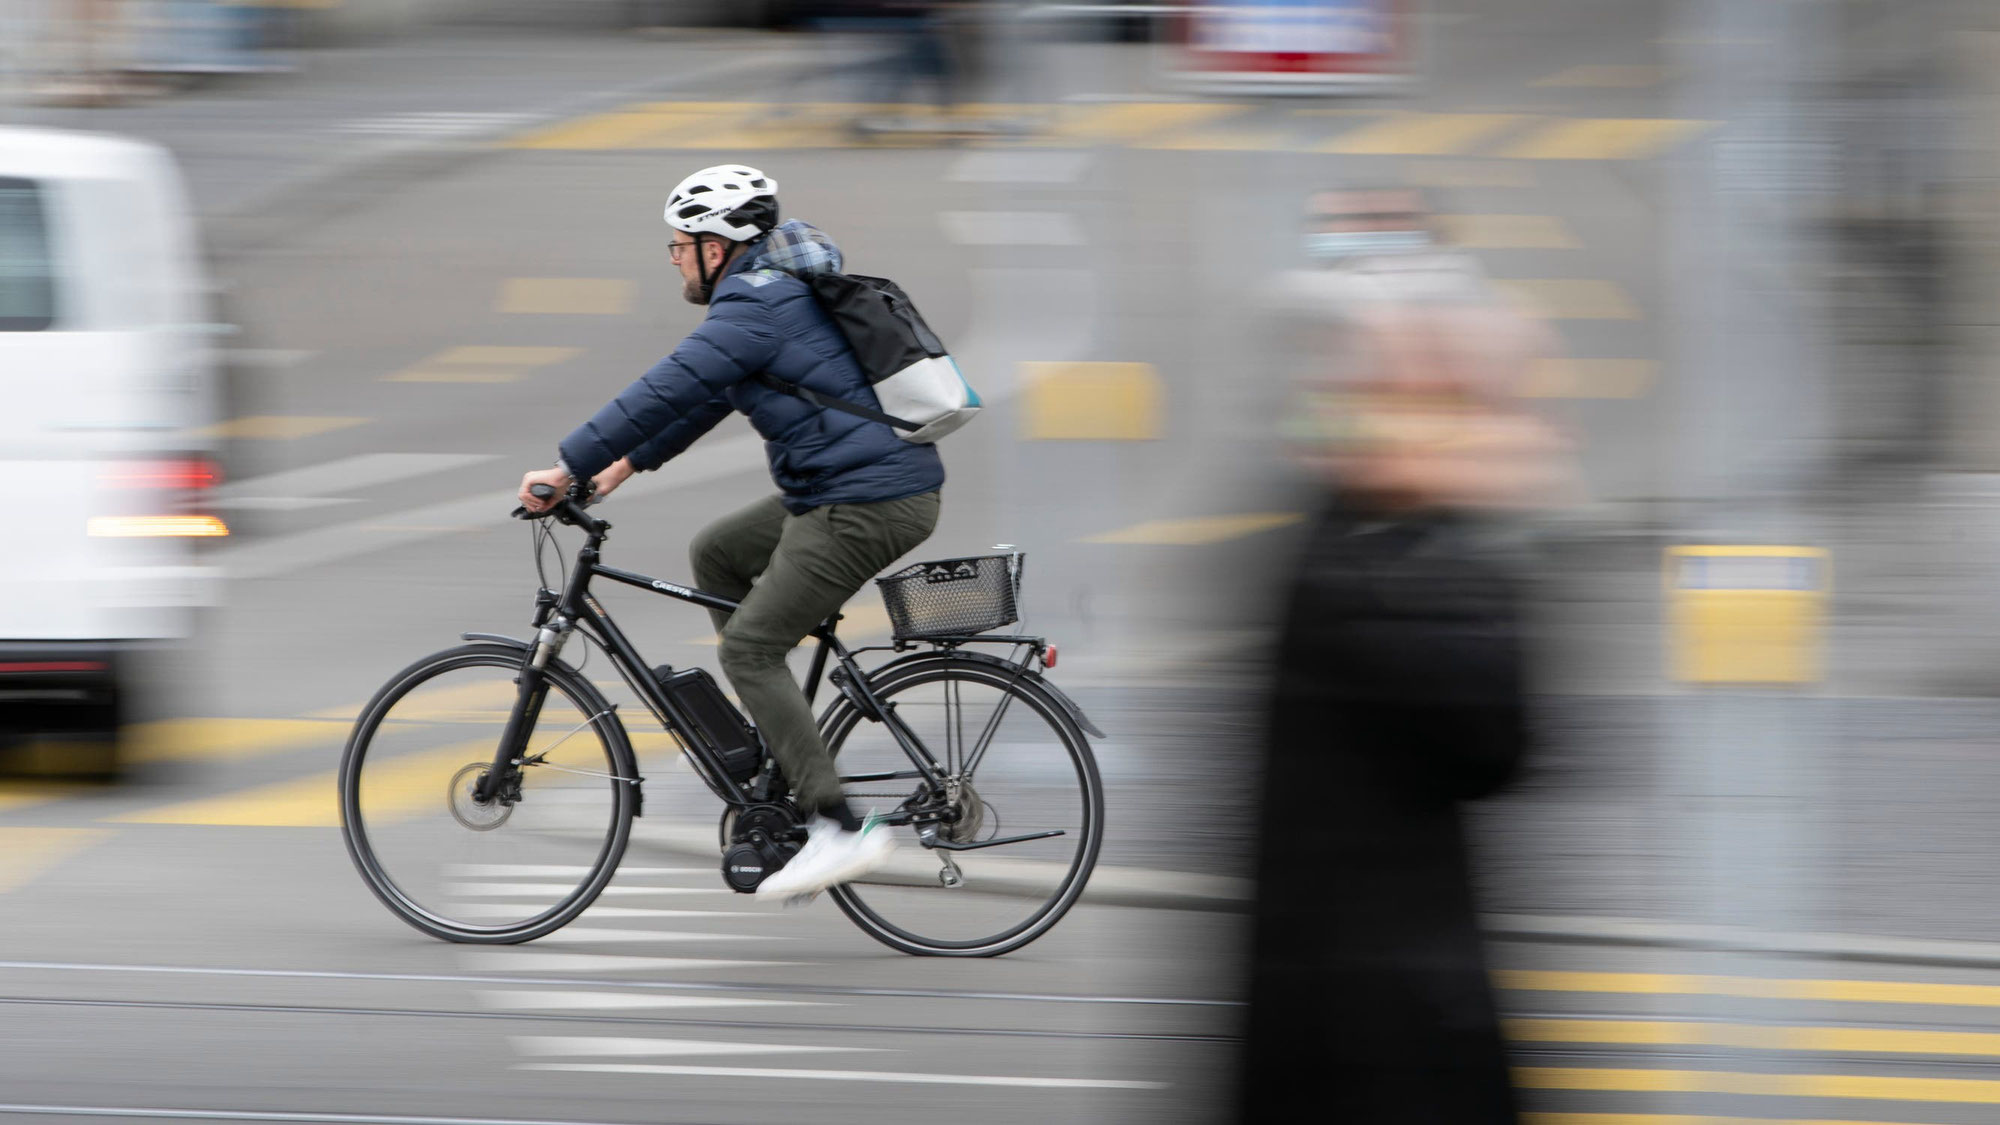 Schneller als vom Gesetz erlaubt: Auf Luzerns Strassen sind getunte E-Bikes unterwegs